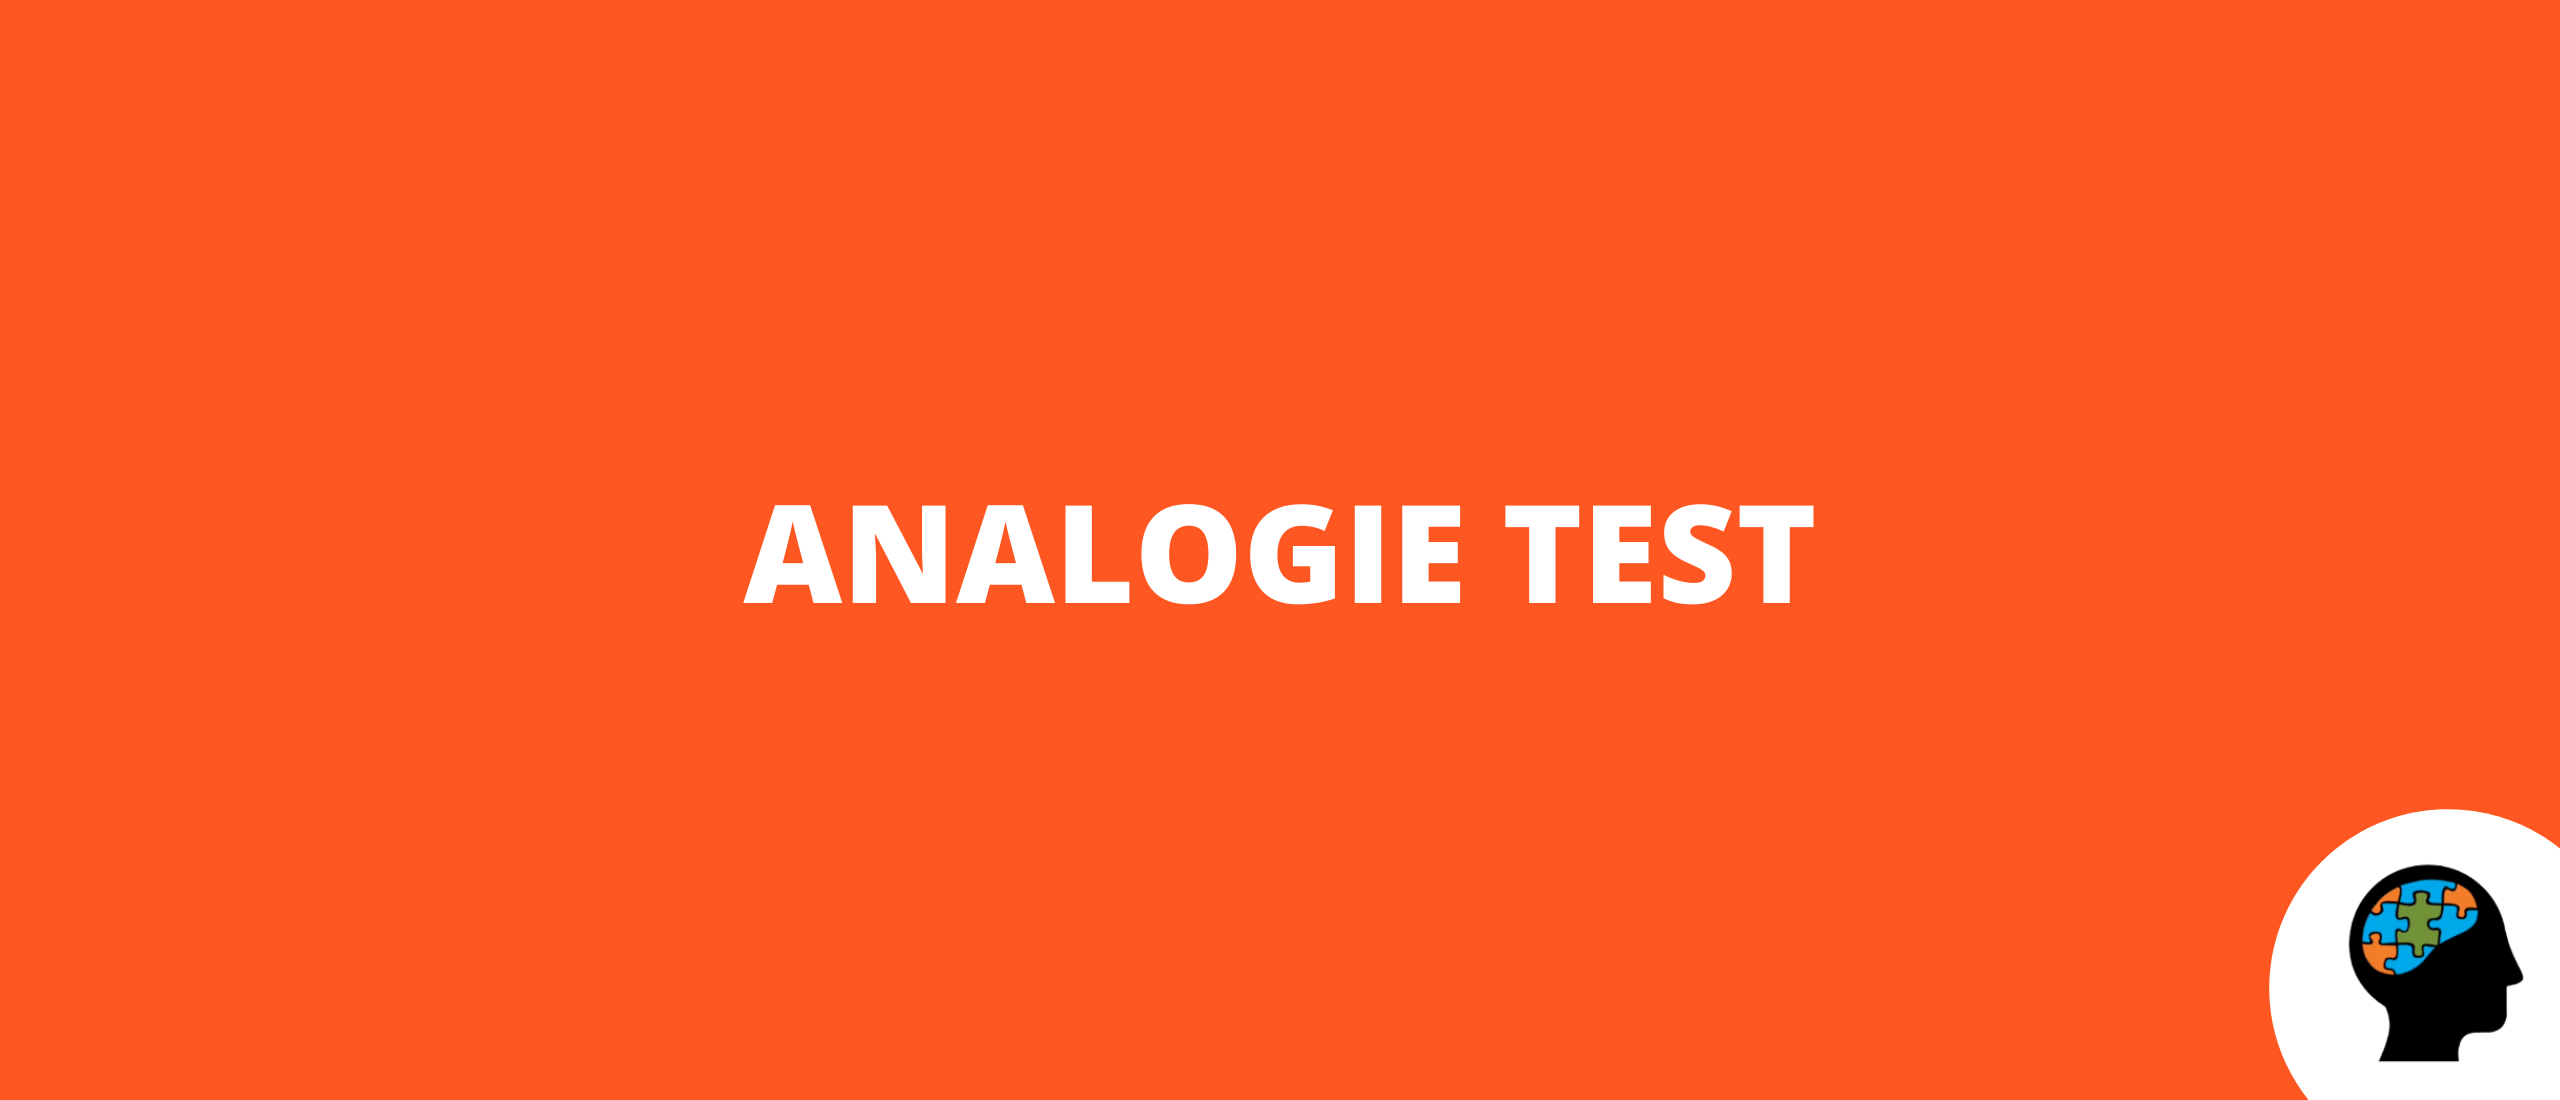 Analogie test